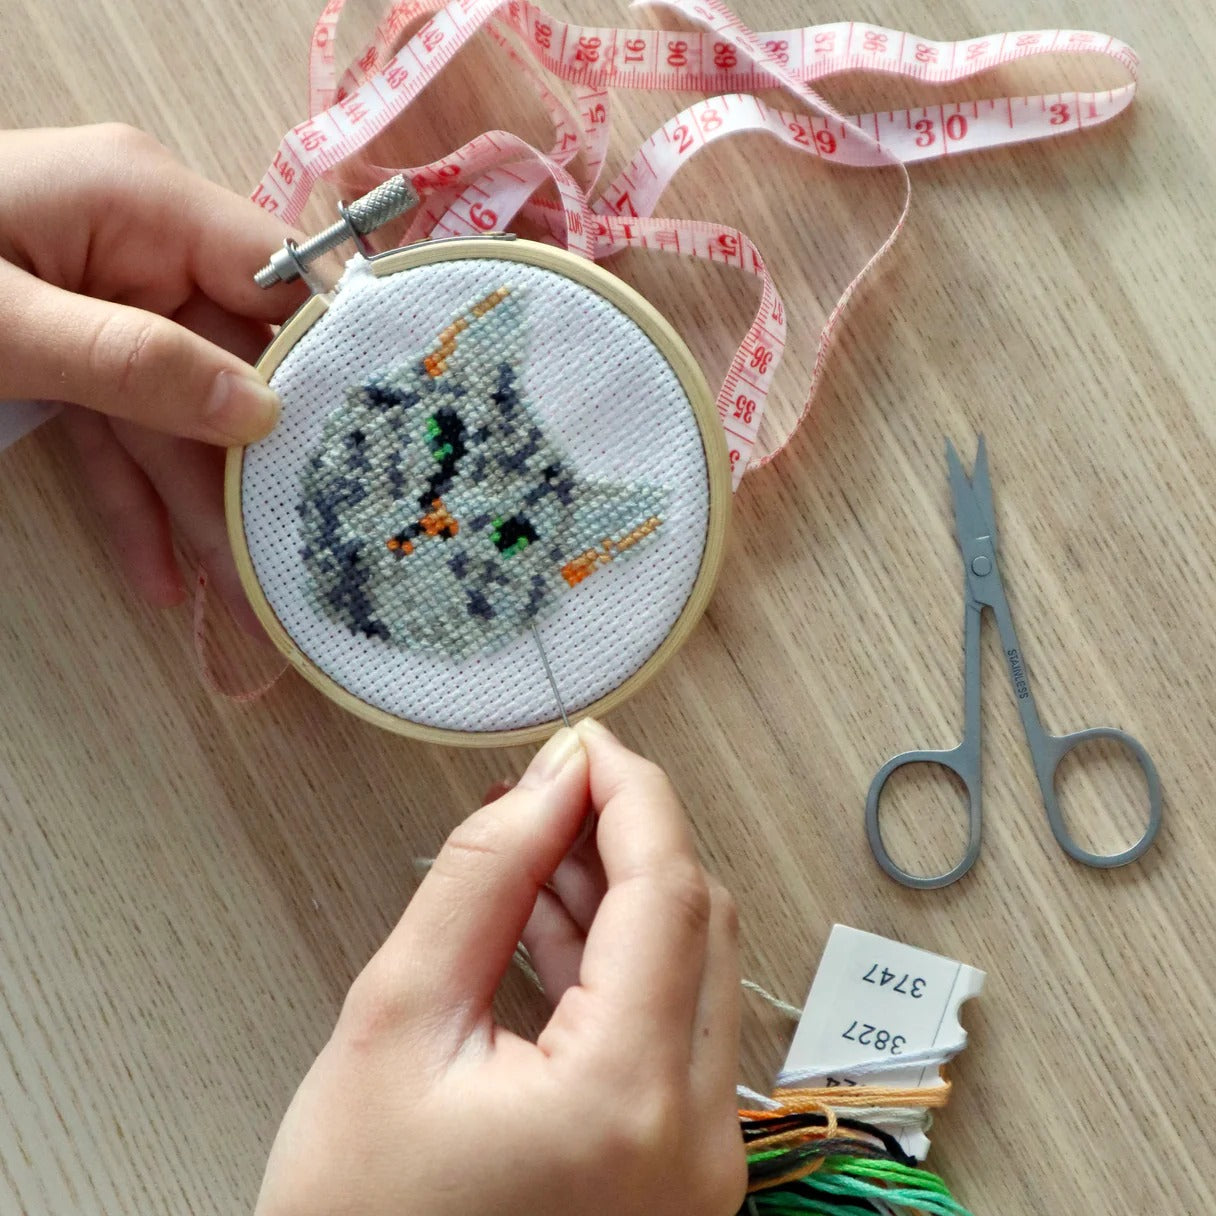 Mini Cross Stitch Embroidery Kit - Cat